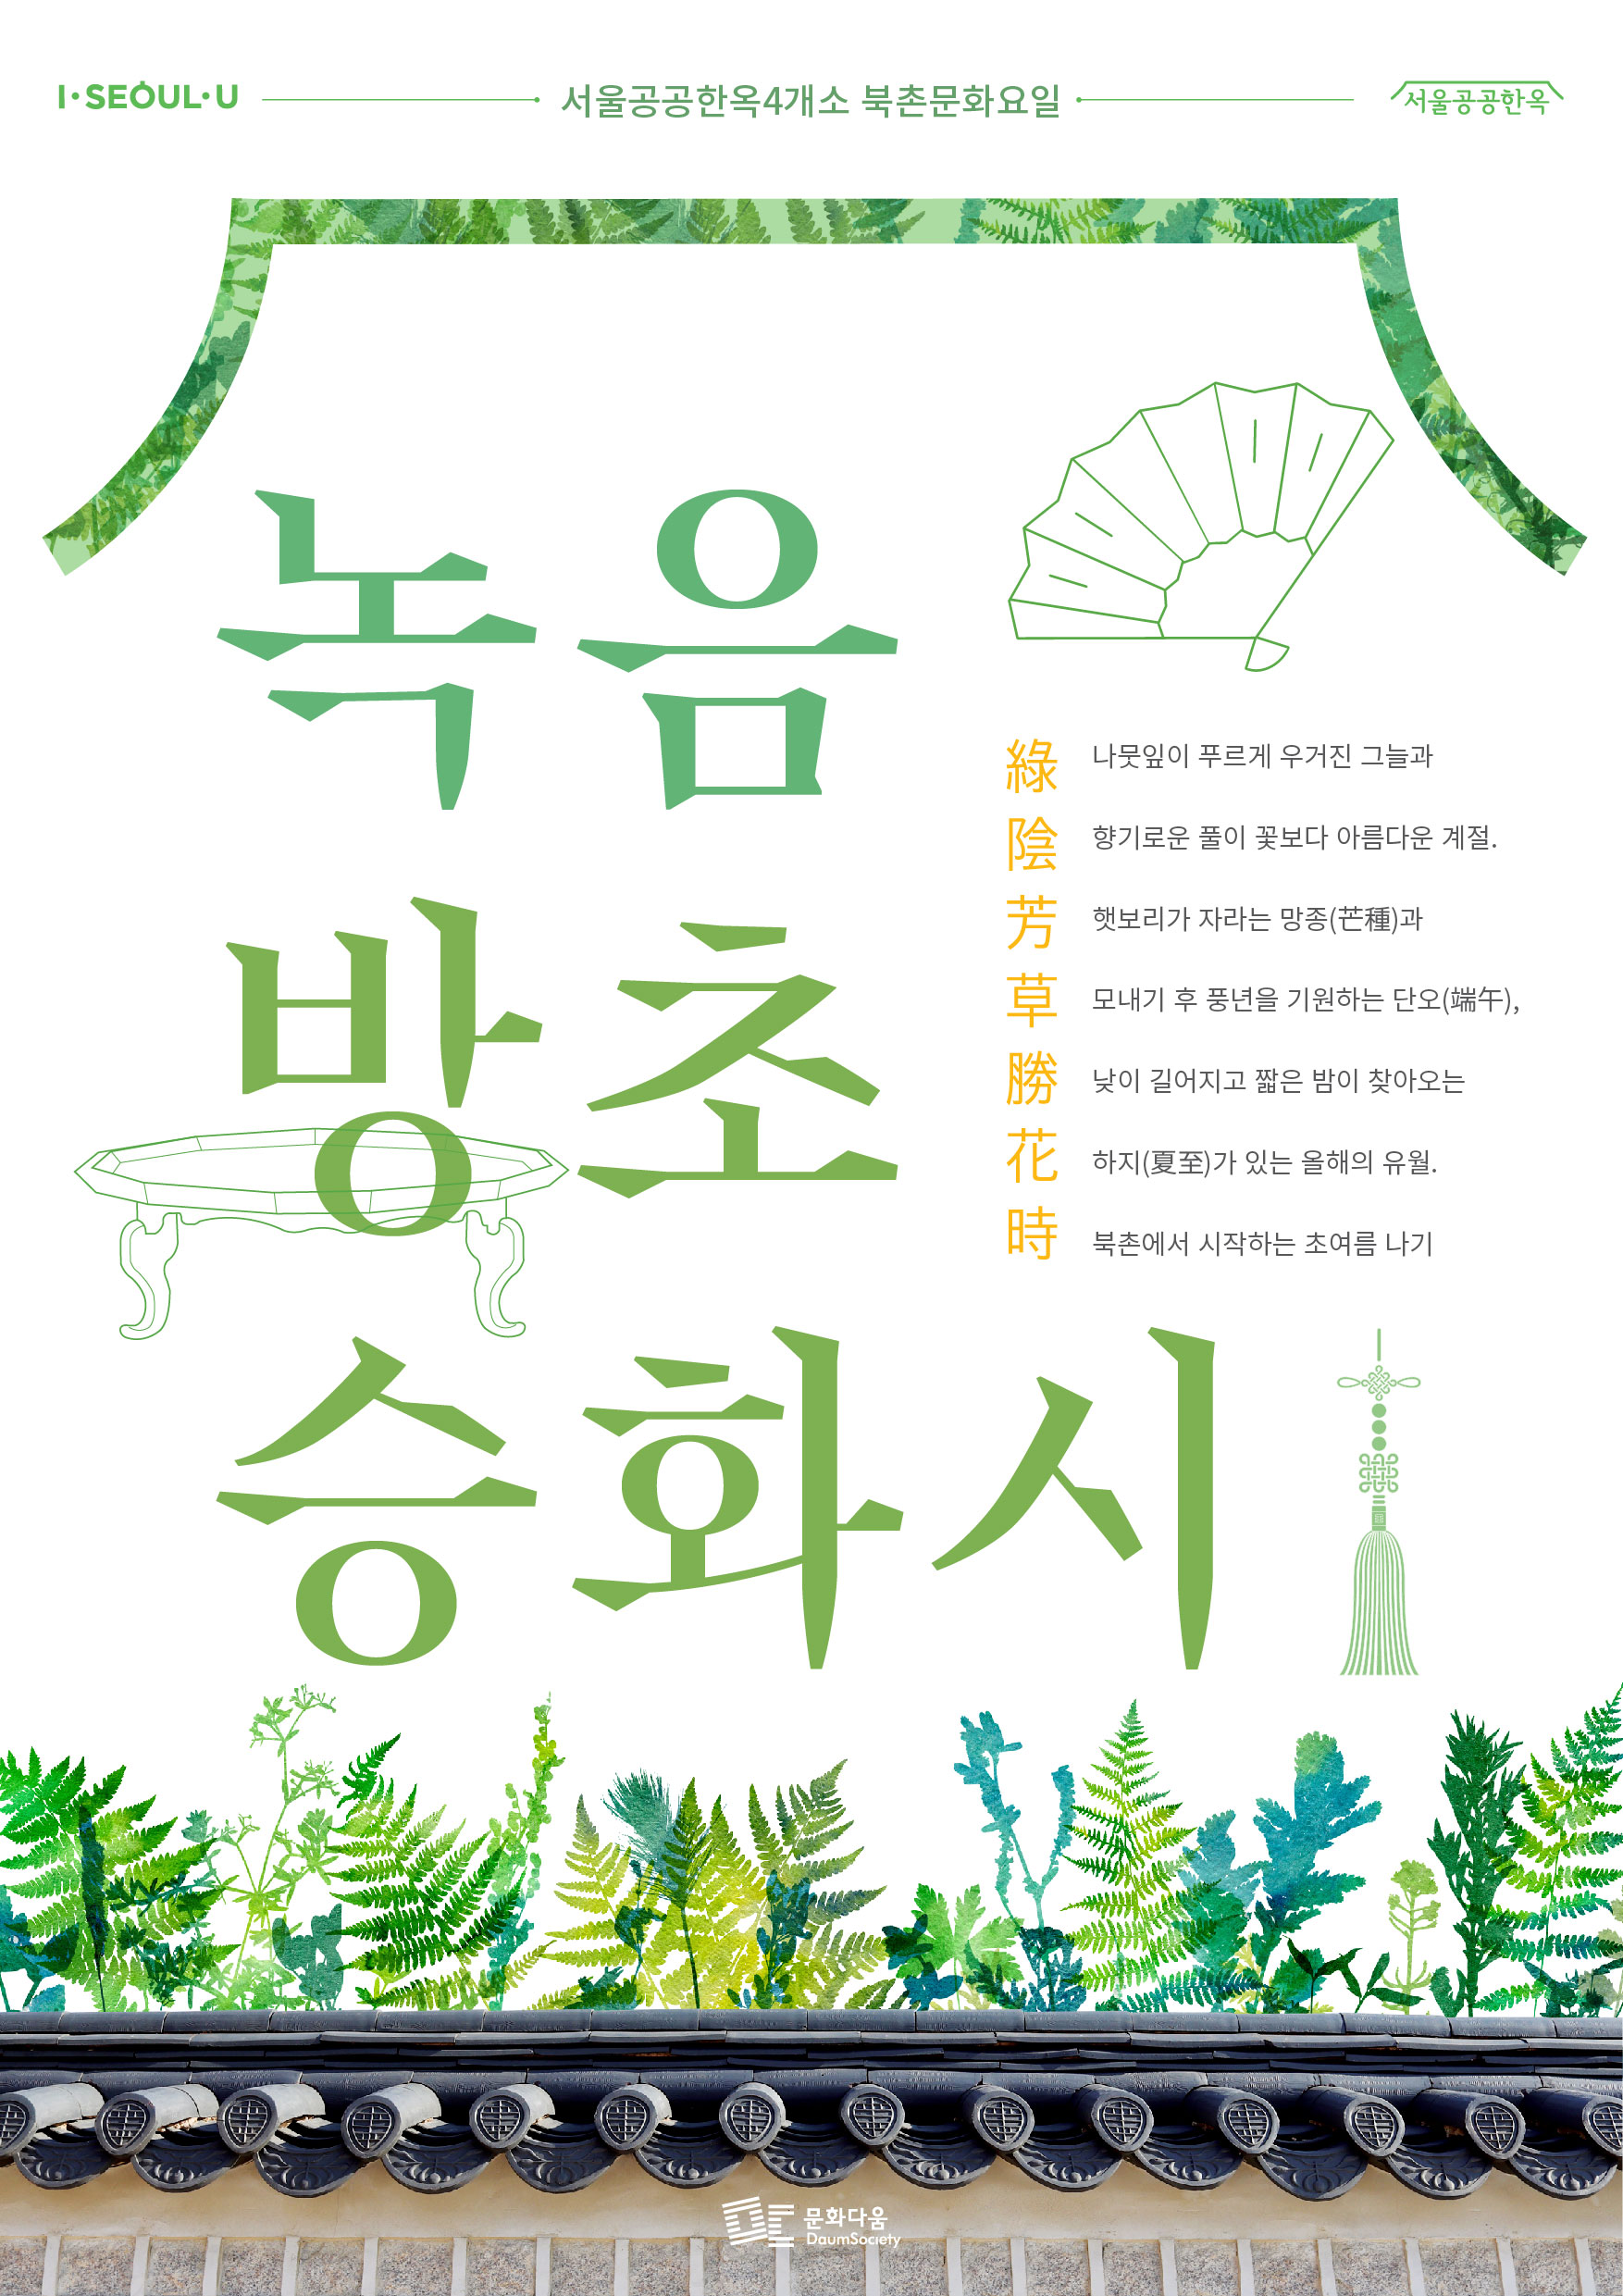 녹음방초승화시(綠陰芳草勝花時) : 푸른 나무 그늘과 풀향기 가득한 유월의 북촌문화요일